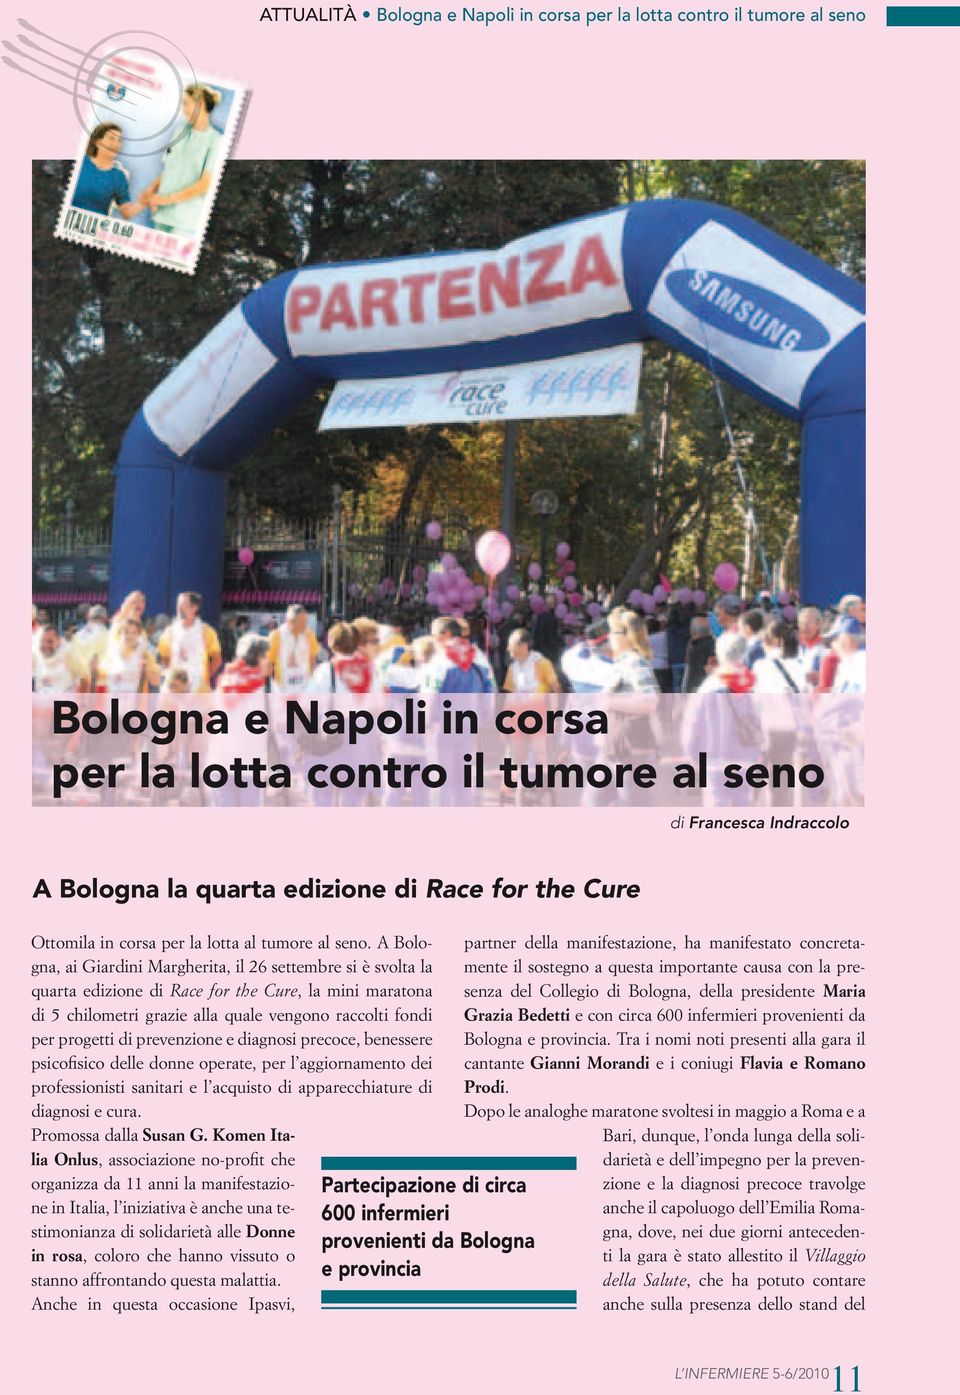 A Bologna, ai Giardini Margherita, il 26 settembre si è svolta la quarta edizione di Race for the Cure, la mini maratona di 5 chilometri grazie alla quale vengono raccolti fondi per progetti di